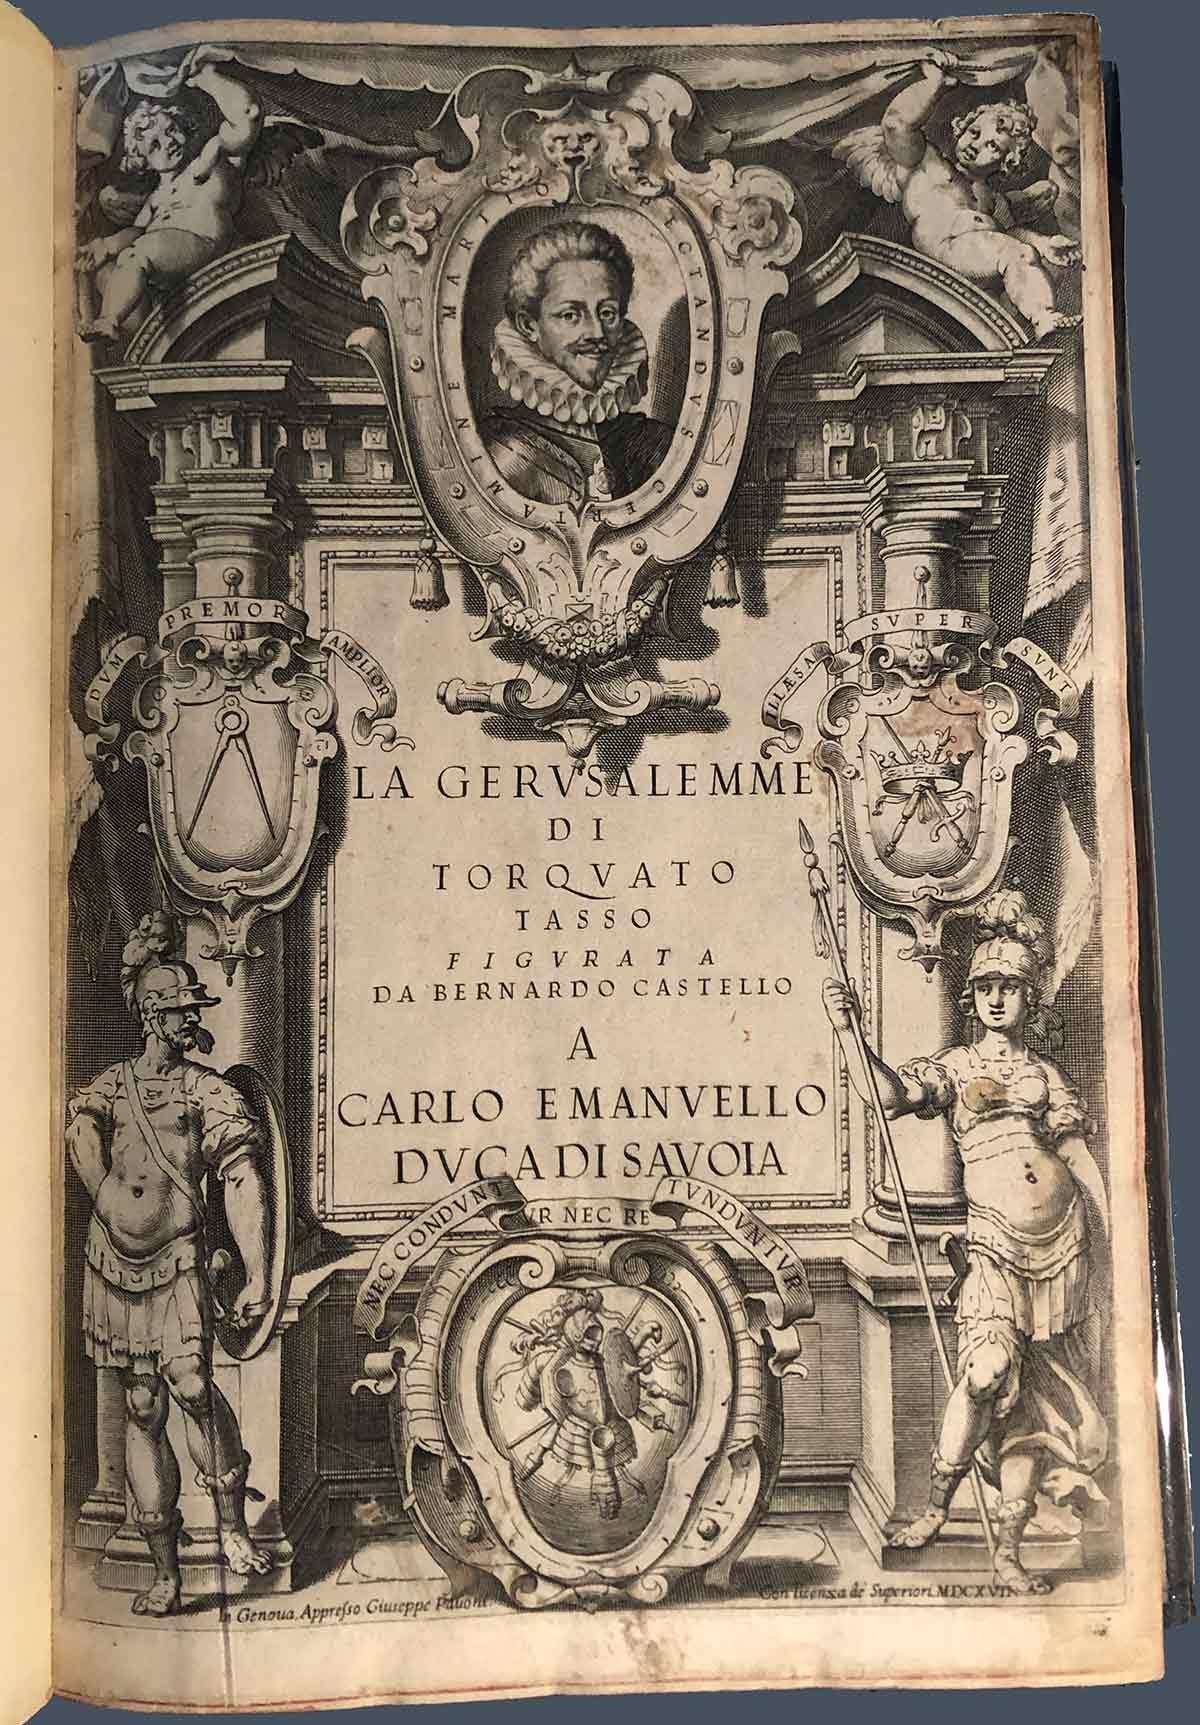 Une édition illustrée ancienne de La Jérusalem délivrée par Torquato Tasso (1544 - 1595)
